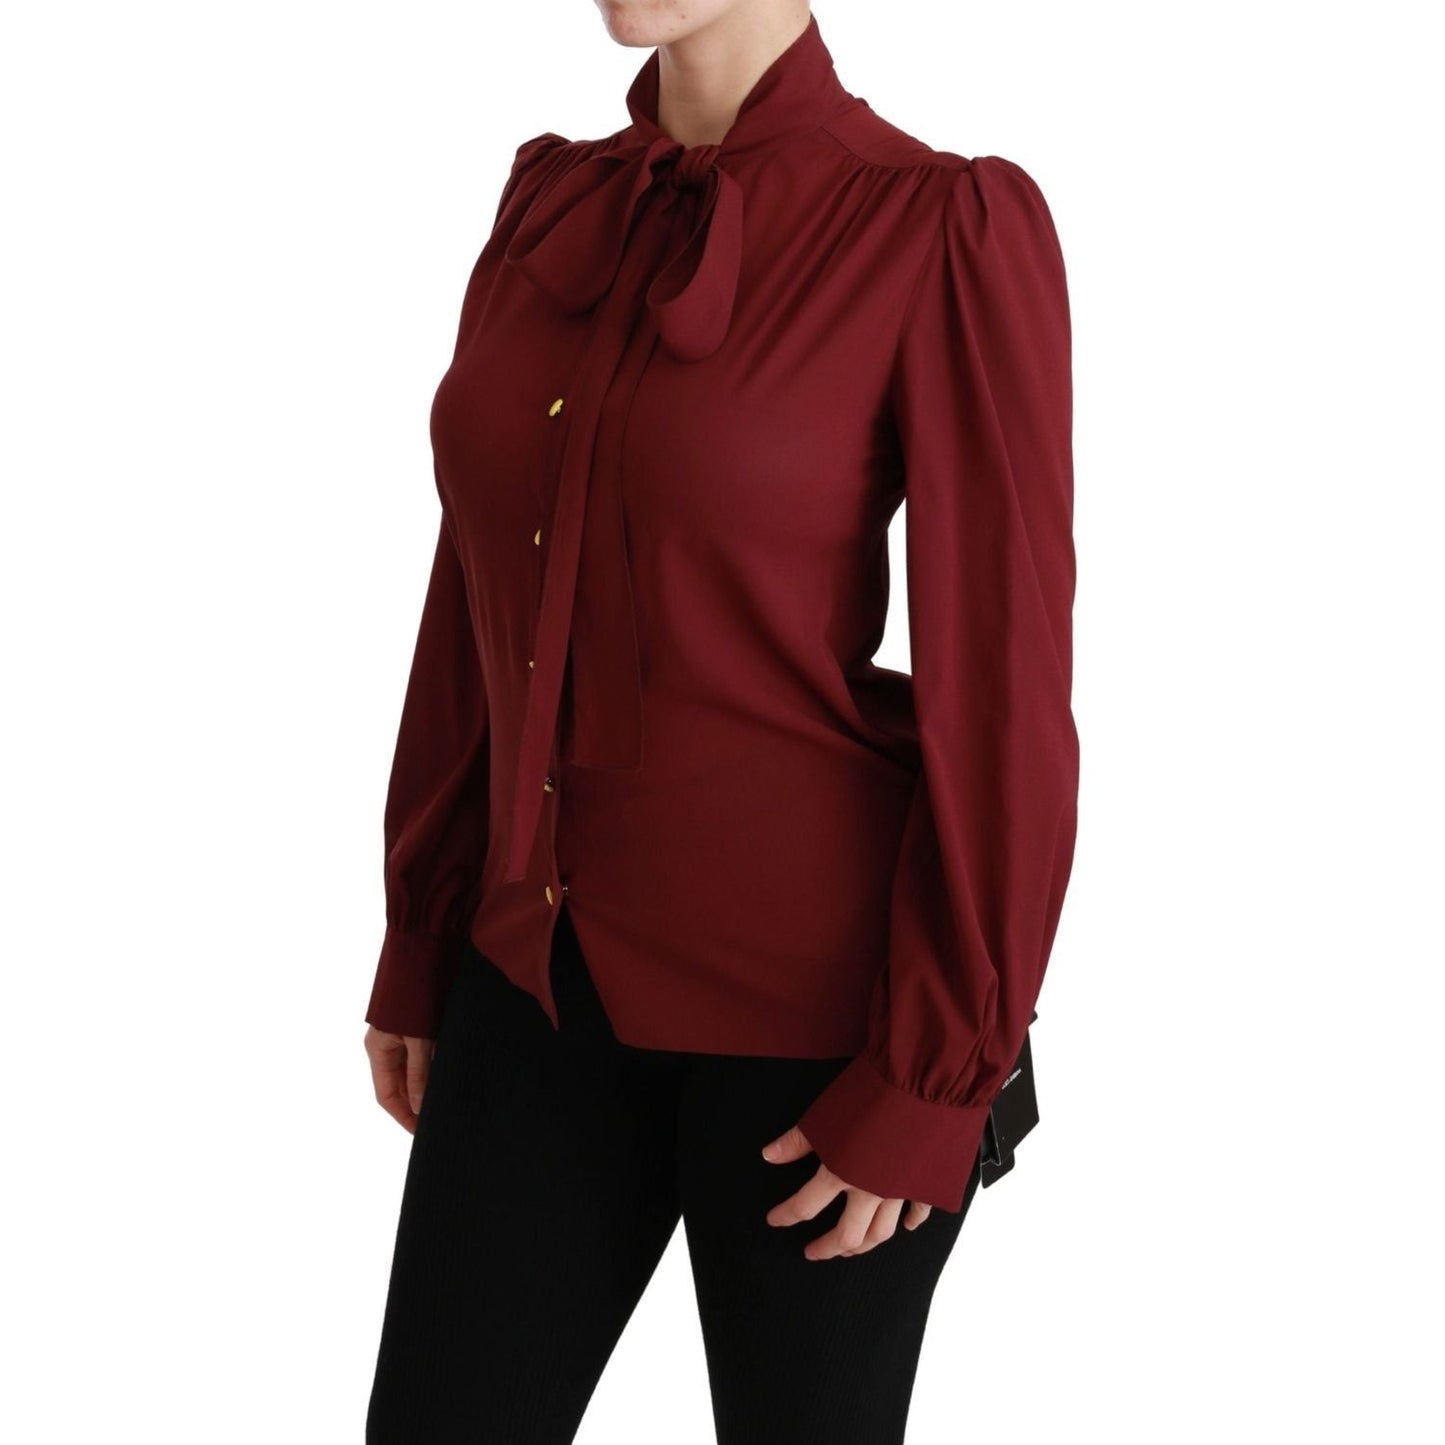 Dolce & Gabbana | Maroon Long Sleeve Shirt Blouse Silk Top | McRichard Designer Brands